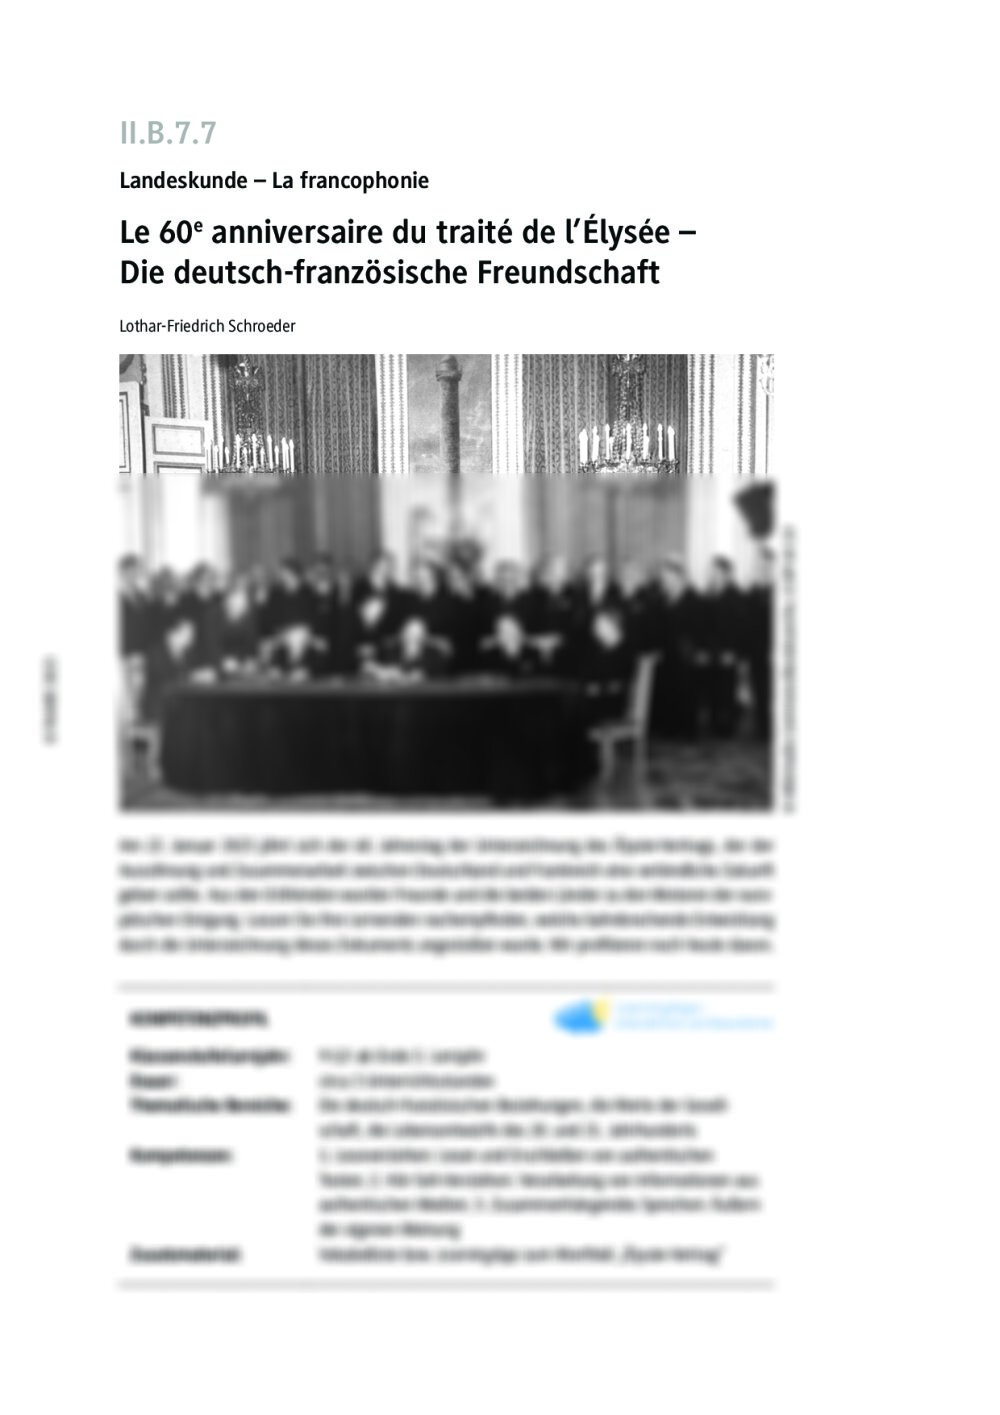 Le 60e anniversaire du traité de l’Élysée  - Seite 1